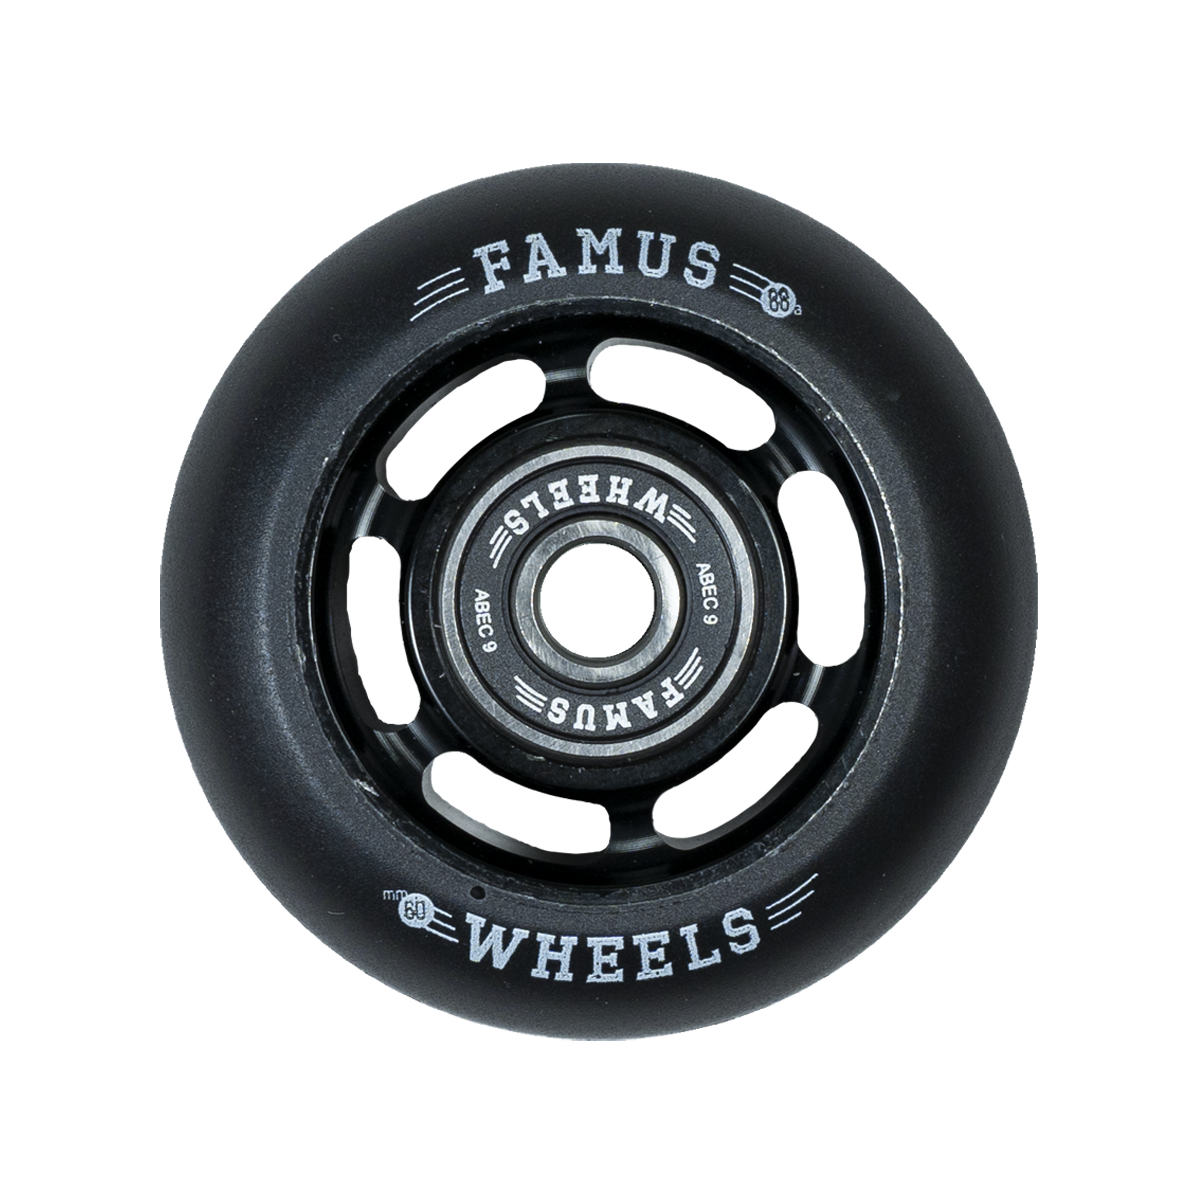 FAMUS WHEELS - 60mm 6 SPOKES